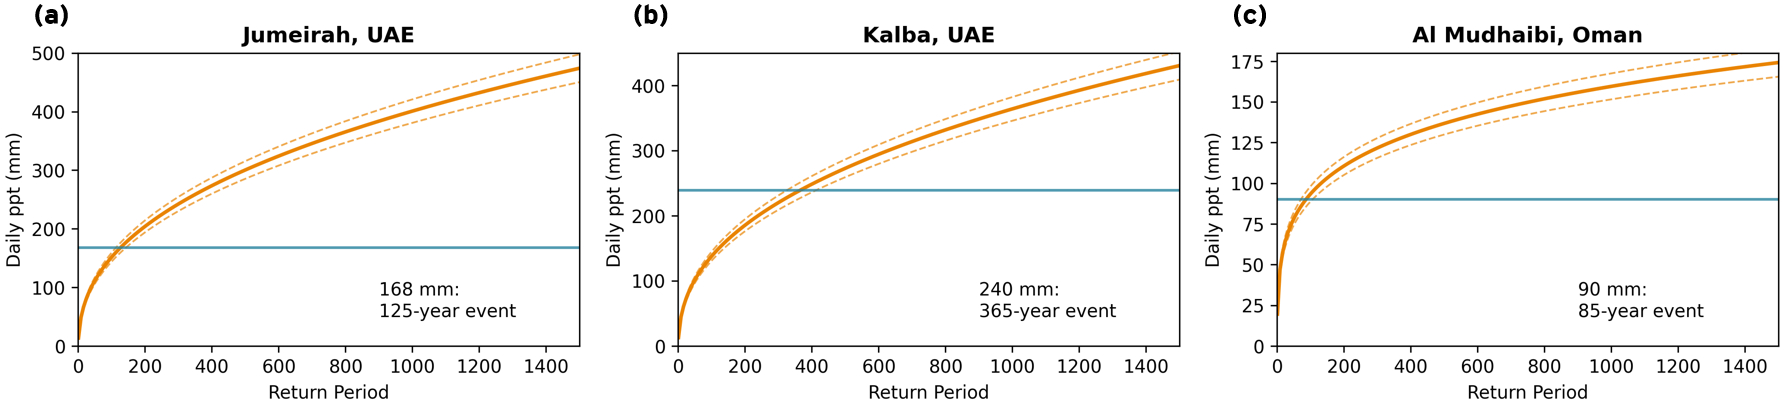 Return period graph of Jumeirah, Kalba and Al Mudhaibi